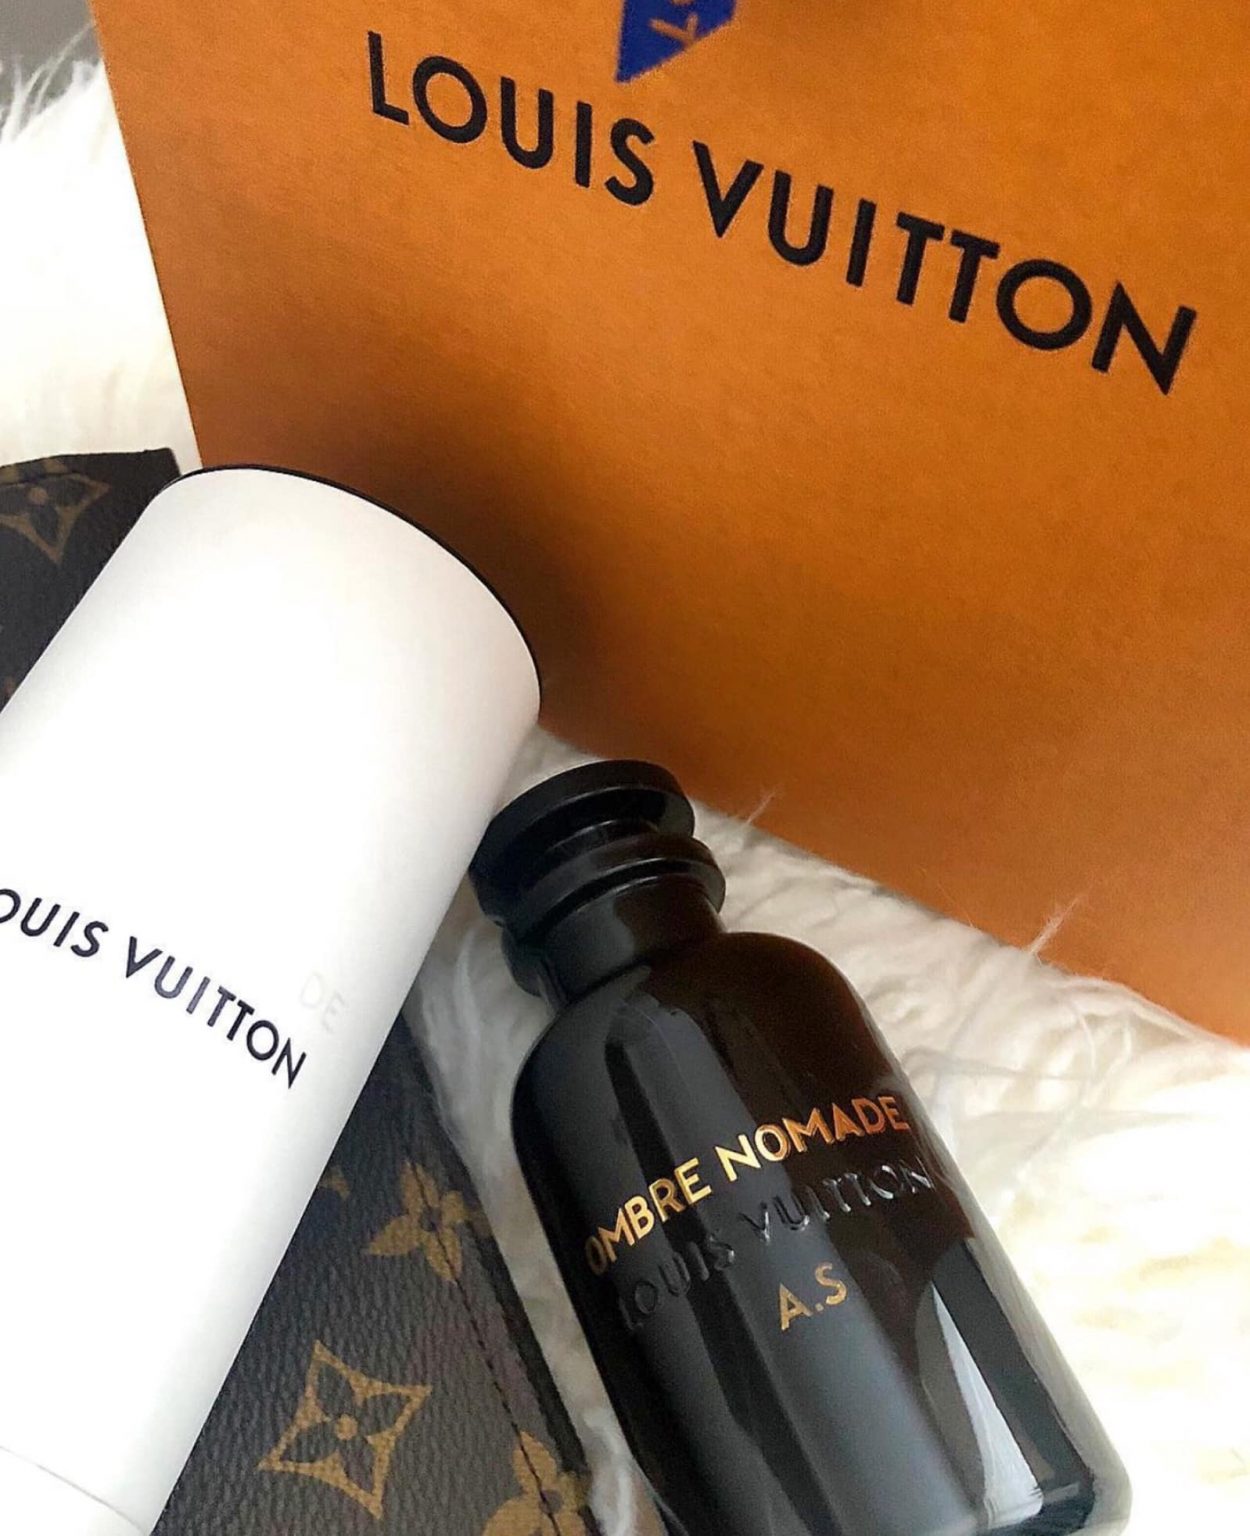 Louis Vuitton Pur Oud 100ml -Best designer perfumes online sales